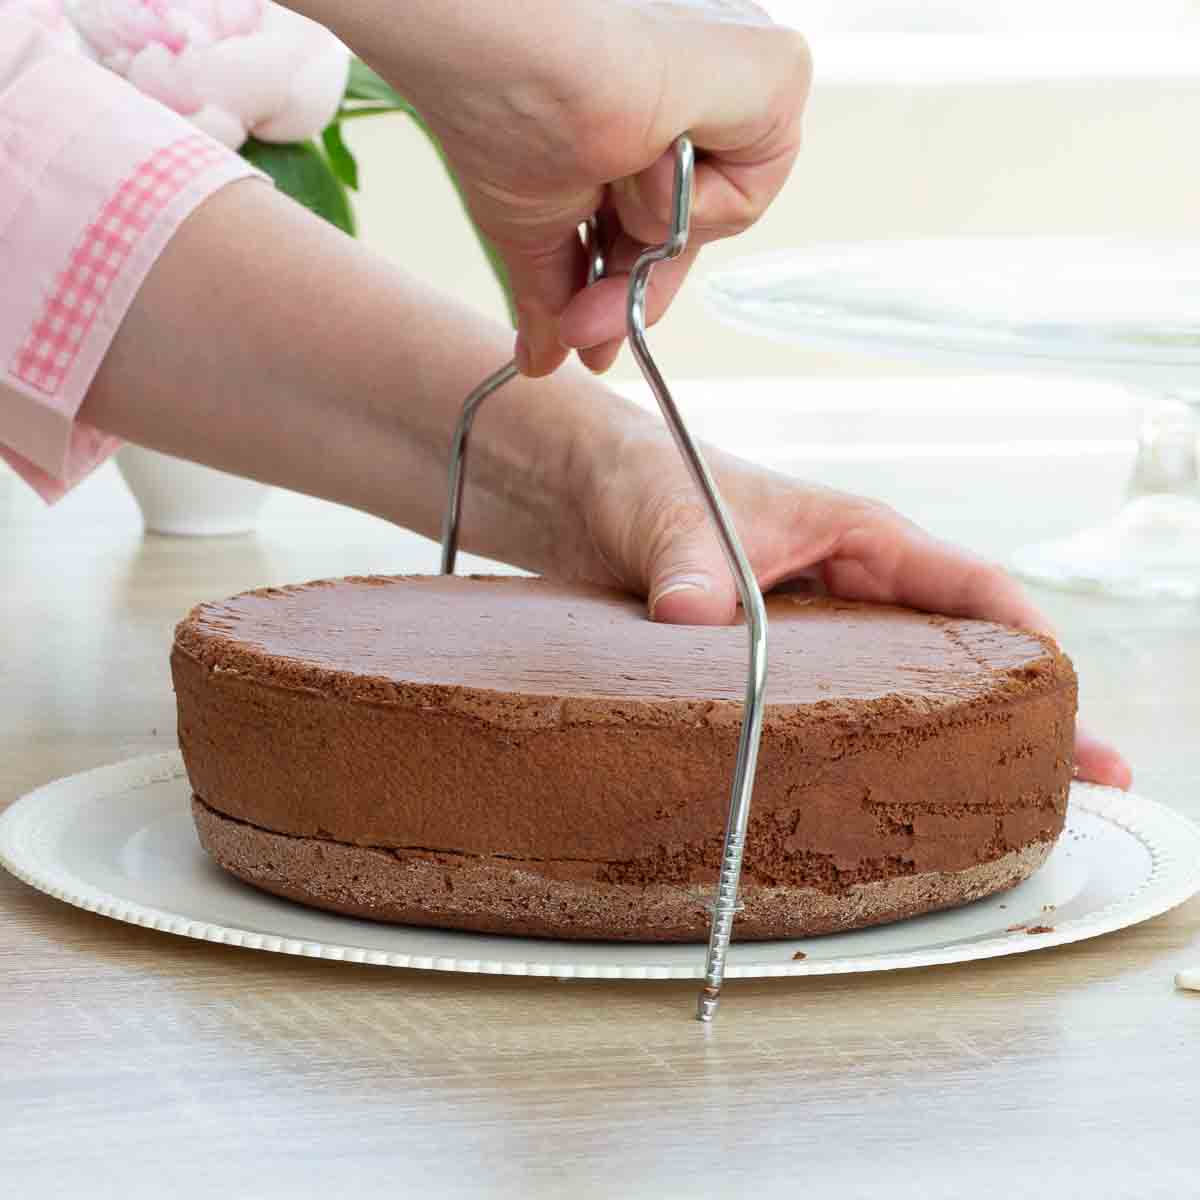 Torte mit Tortenschneider schneiden